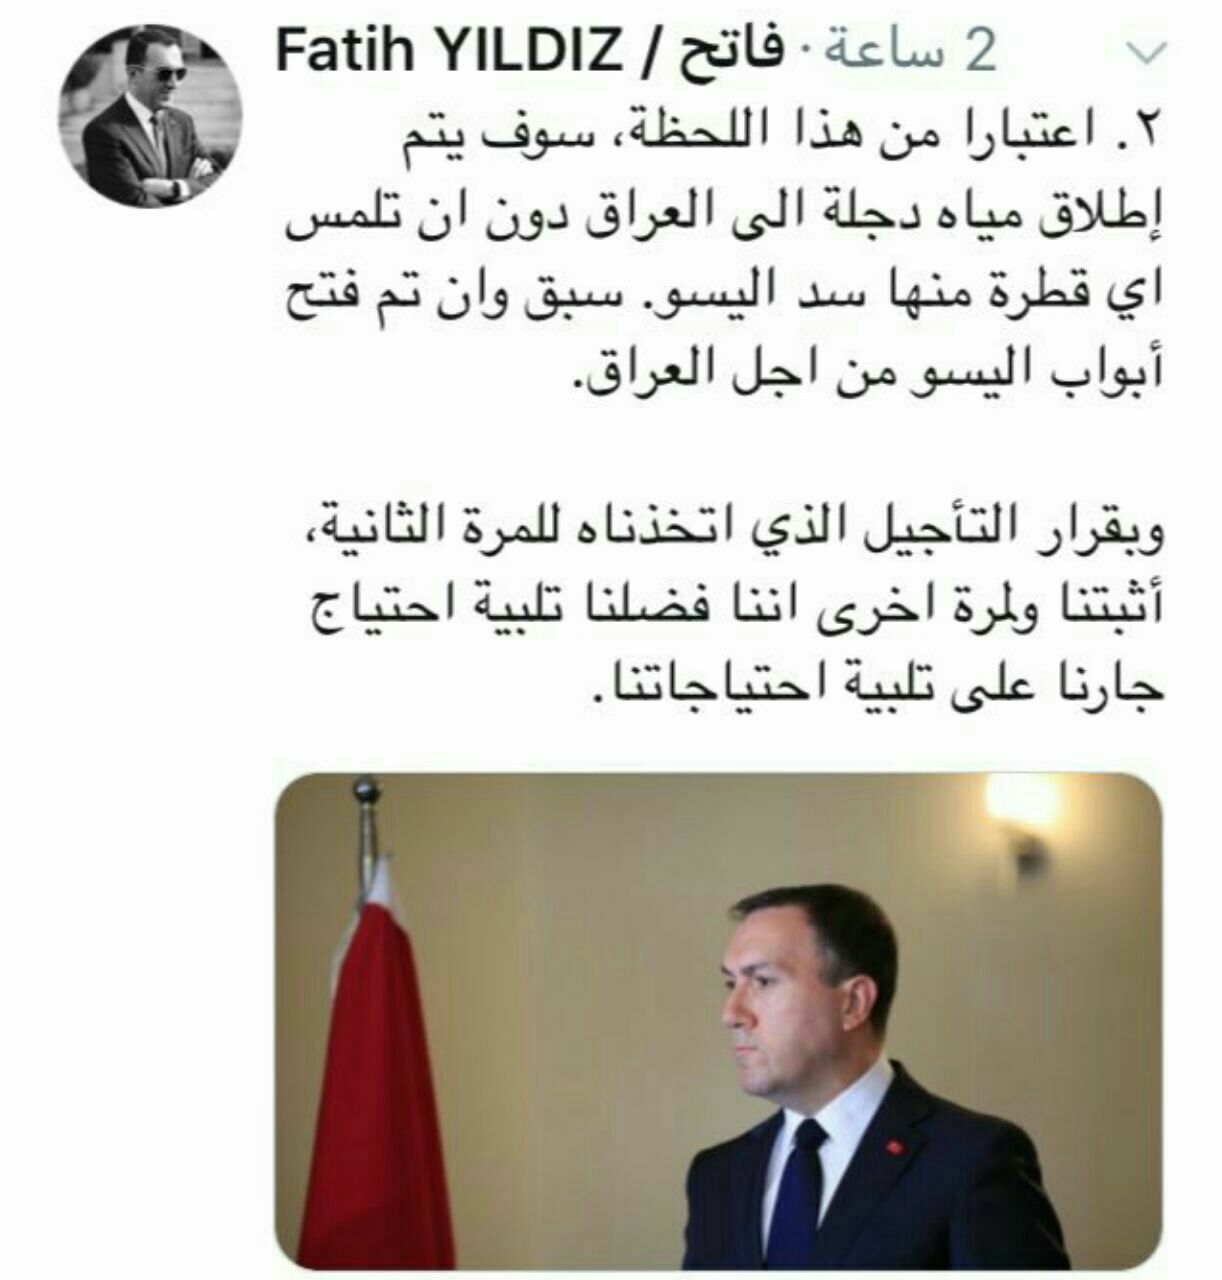 السفير التركي في بغداد "فاتح يلدز" ... 9f73e510